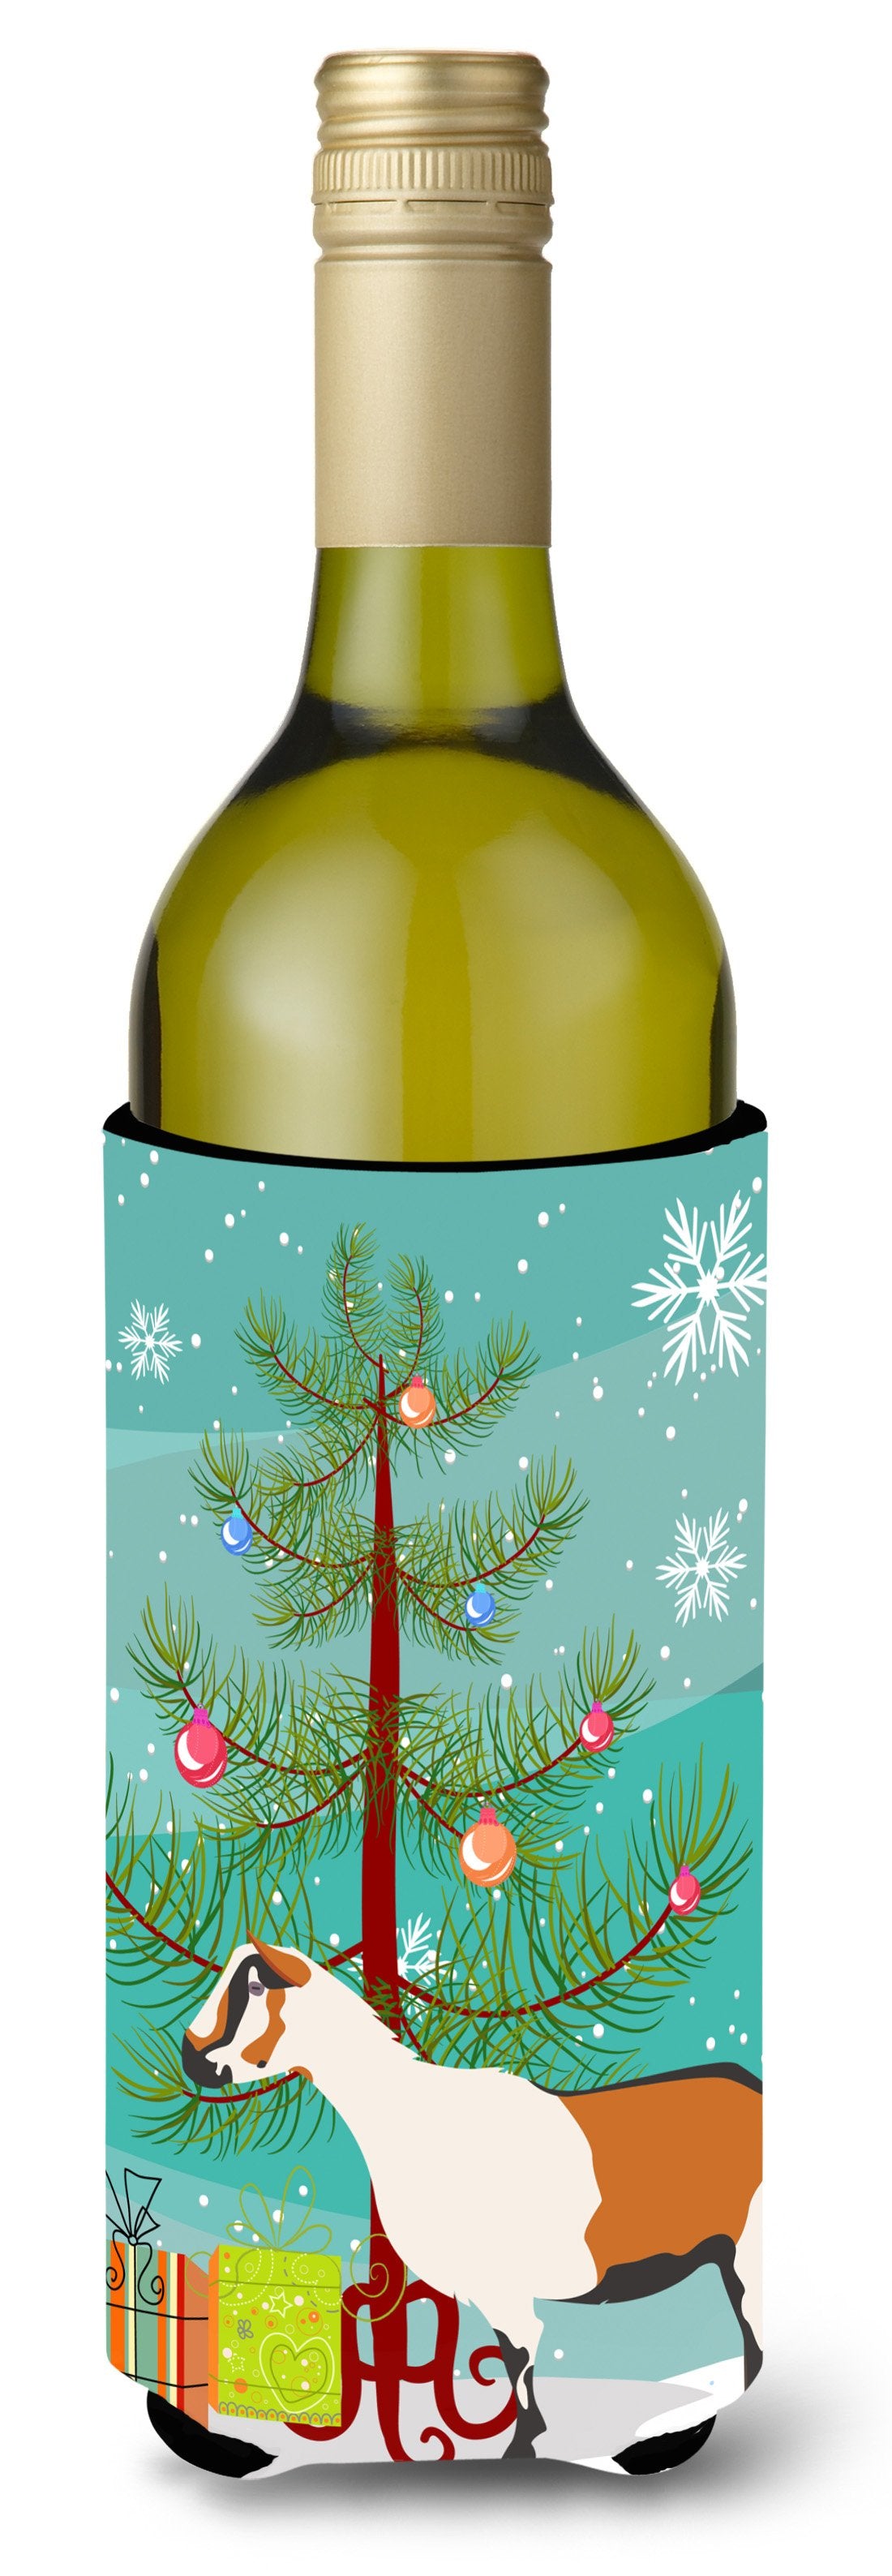 Alpine Goat Christmas Wine Bottle Beverge Insulator Hugger BB9247LITERK by Caroline's Treasures